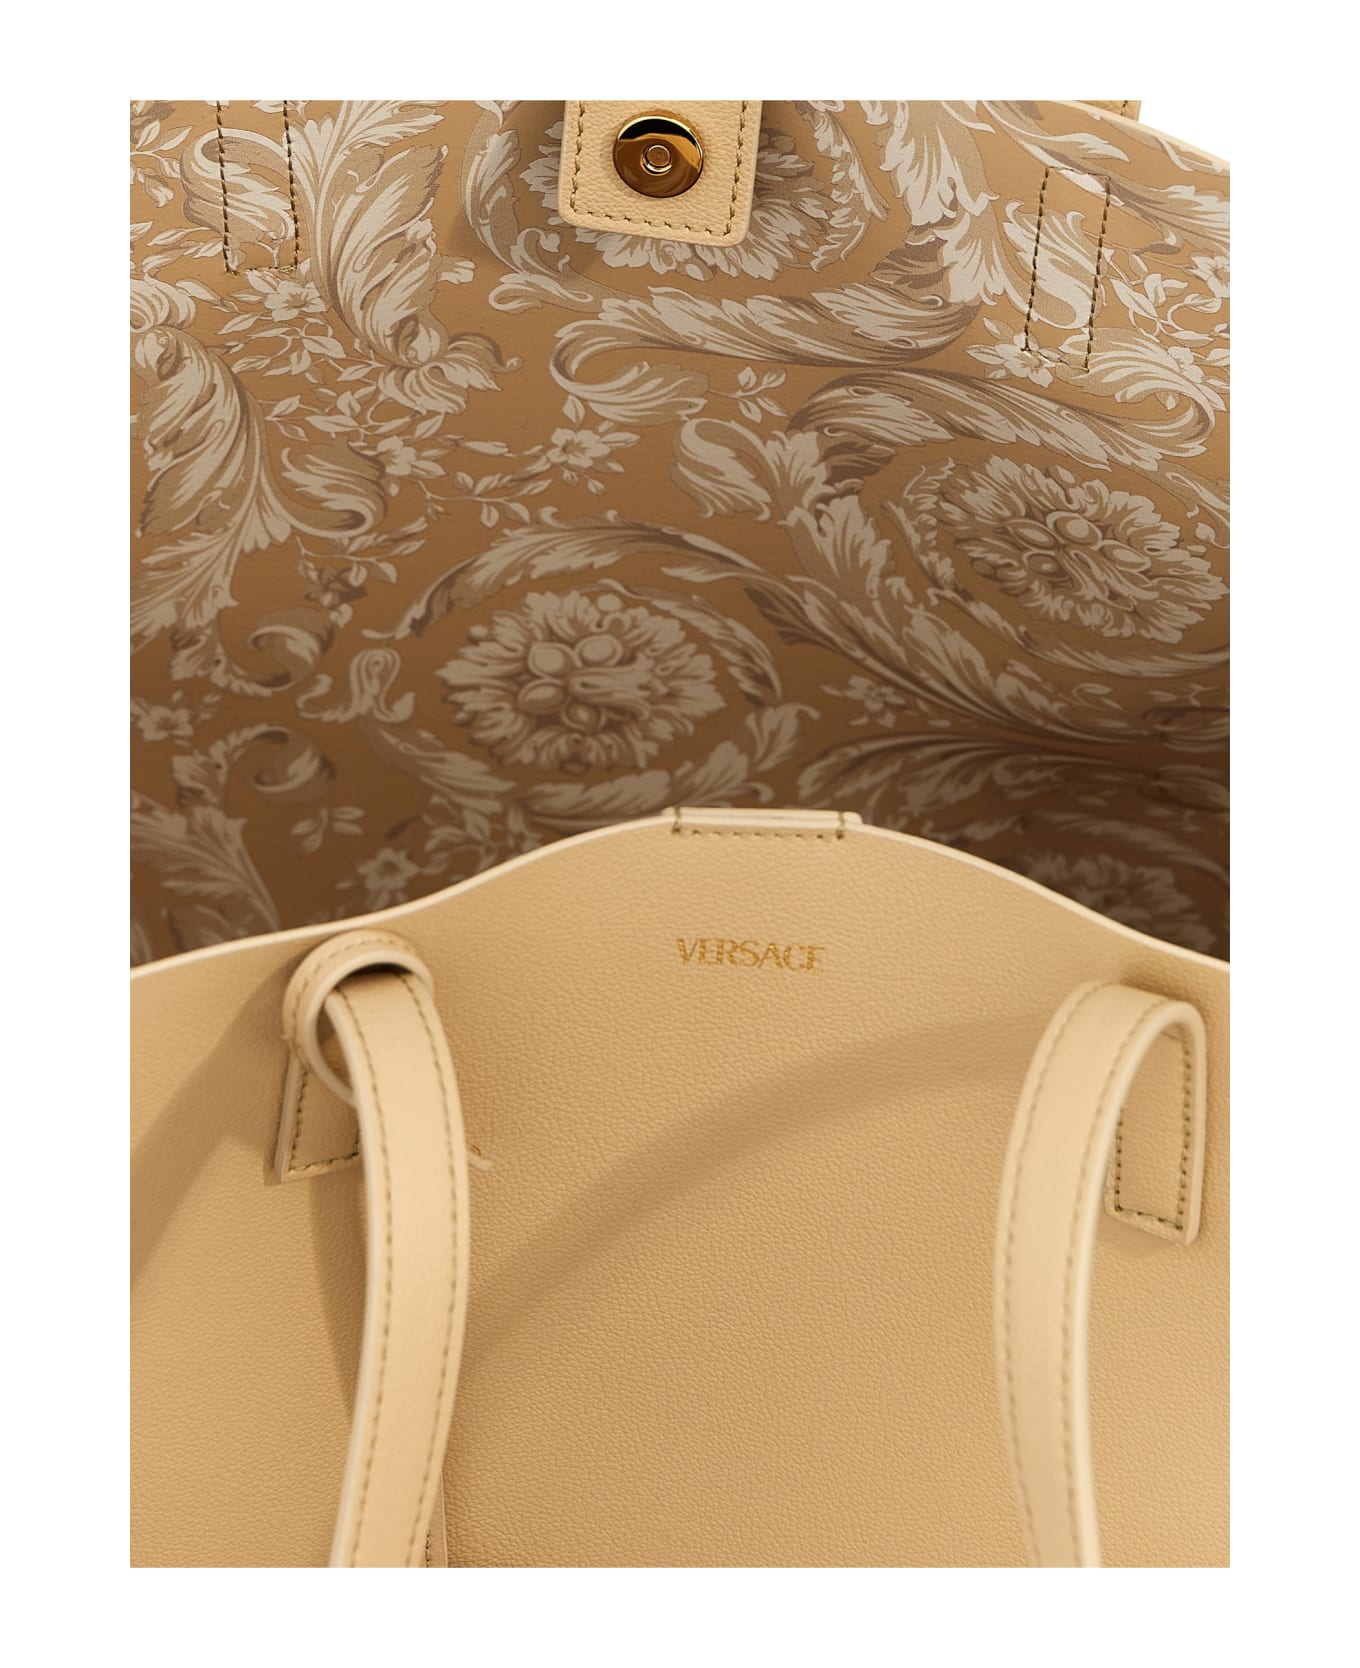 Versace 'virtus' Shopping Bag - Beige